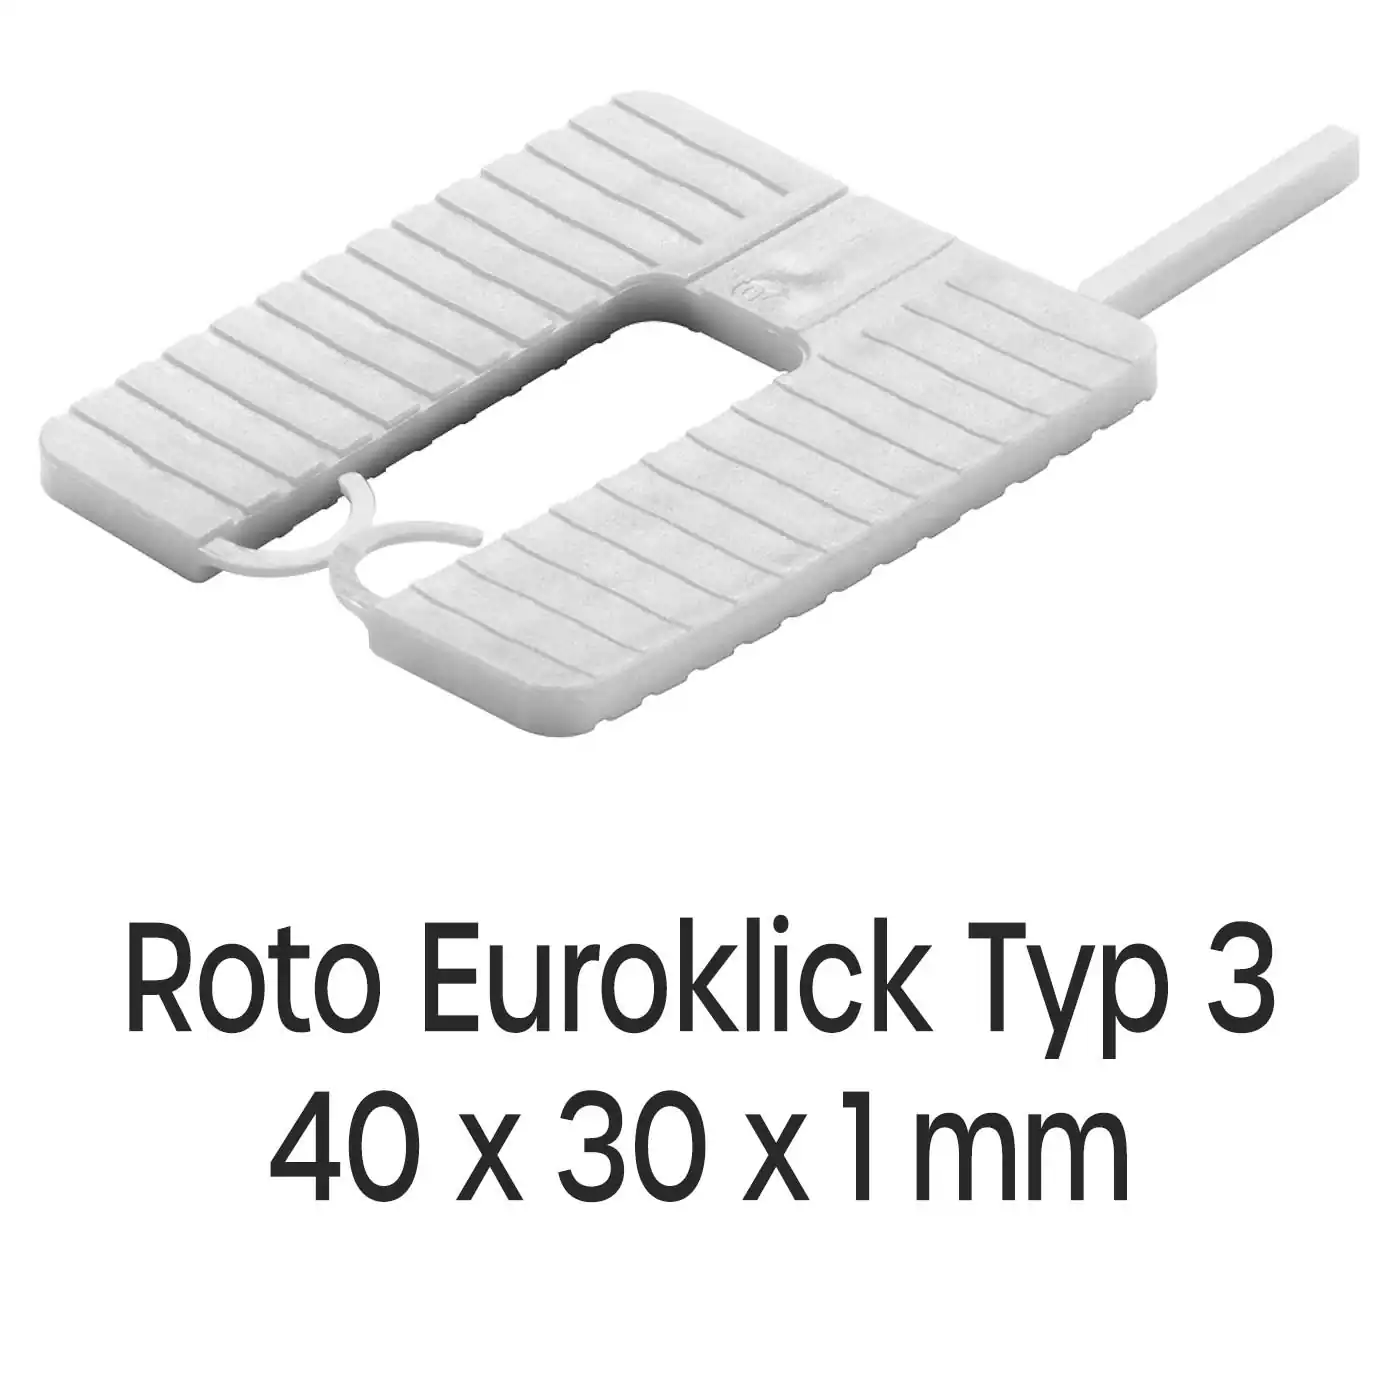 Distanzplatten Roto Euroklick Typ 3 40 x 30 x 1 mm 1000 Stück